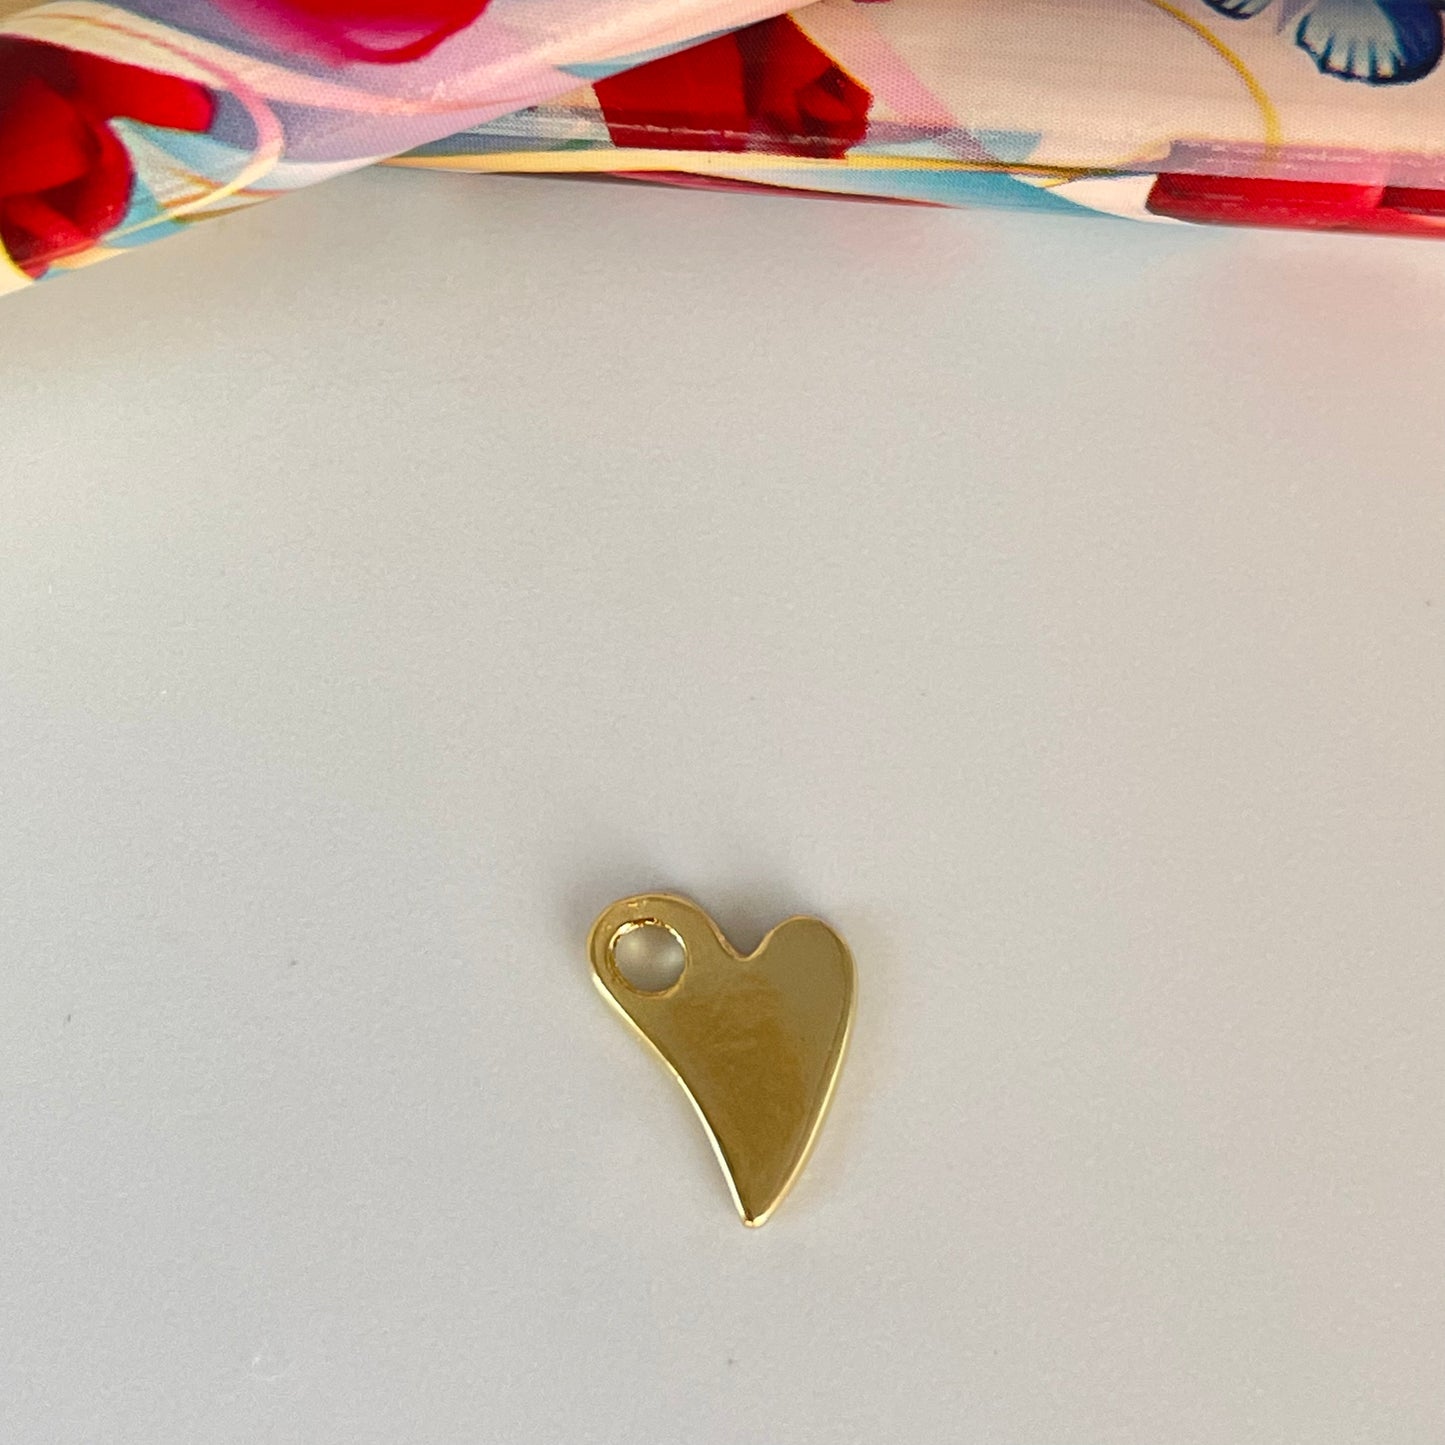 FO1124 Colgante Corazón ladeado con perforación lateral liso Tres tamaños L M y S Espesor 1.2 mm Figura Baño Oro